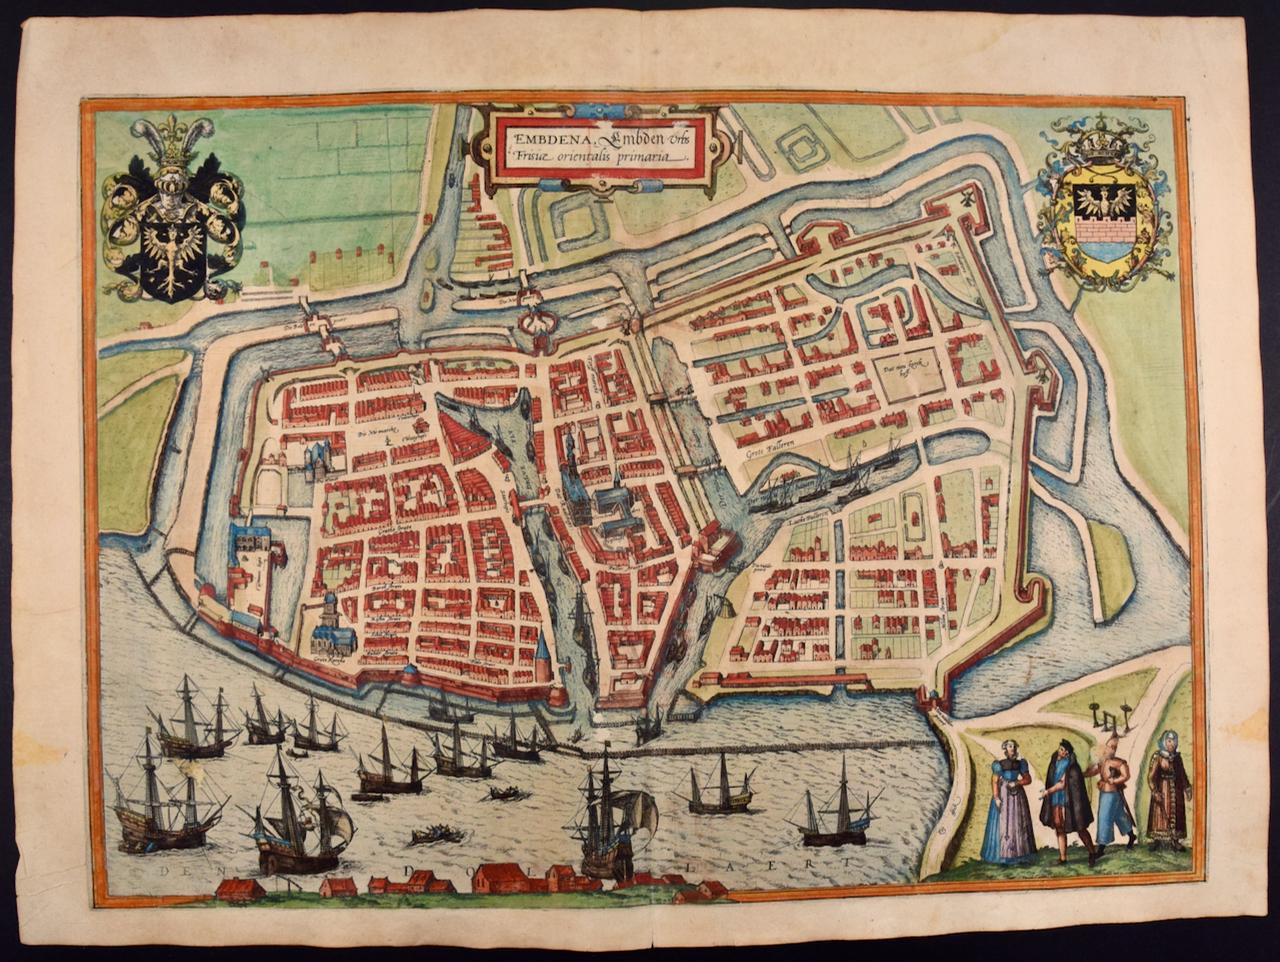  Ansicht von Emden, Deutschland: Eine handkolorierte Karte aus dem 16. Jahrhundert von Braun & Hogenberg